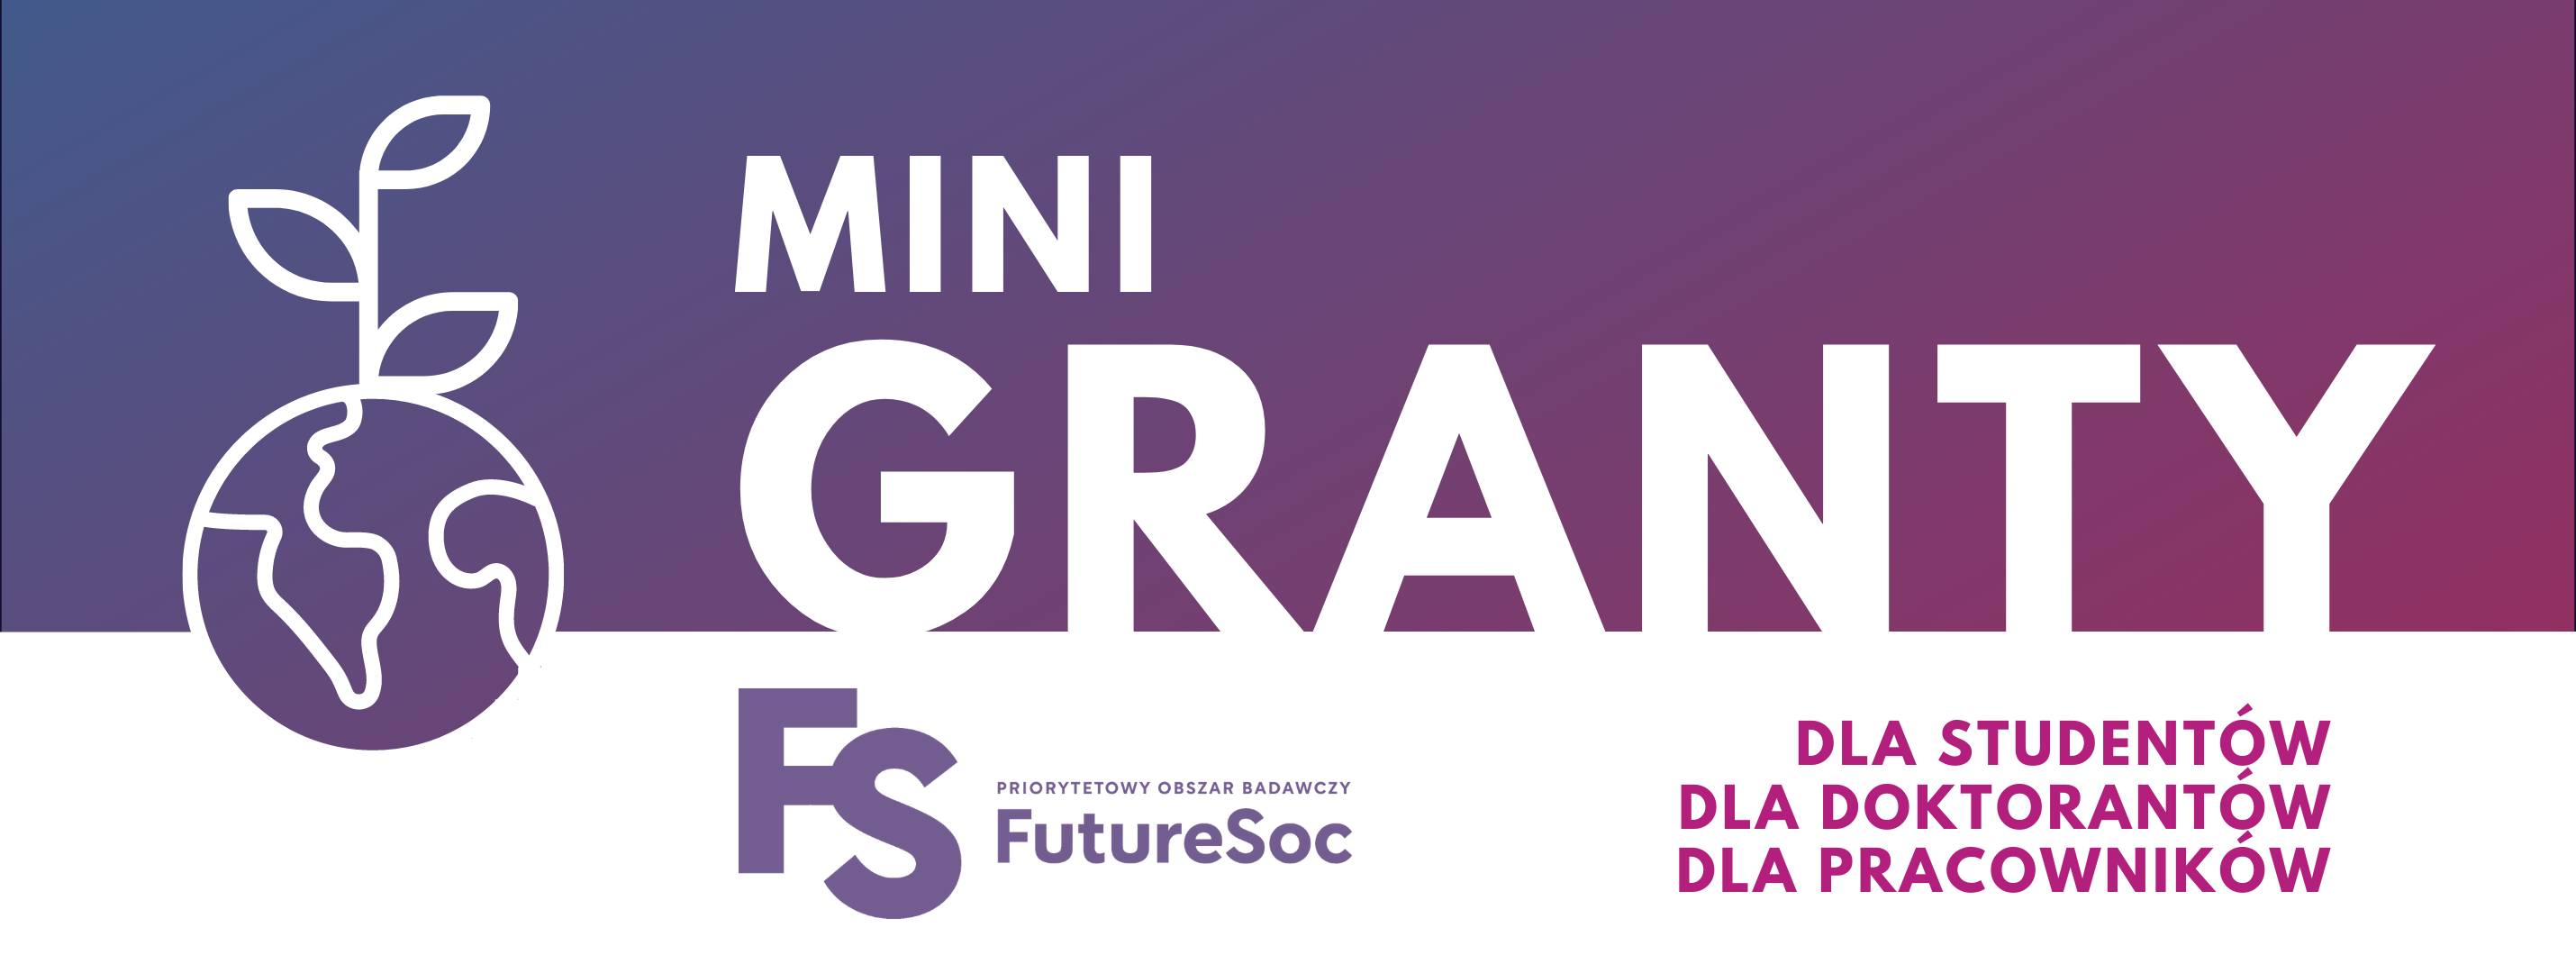 Grafika promująca minigranty FutureSoc, o treści: MINIGRANTY dla studentów, dla doktorantów, dla pracowników